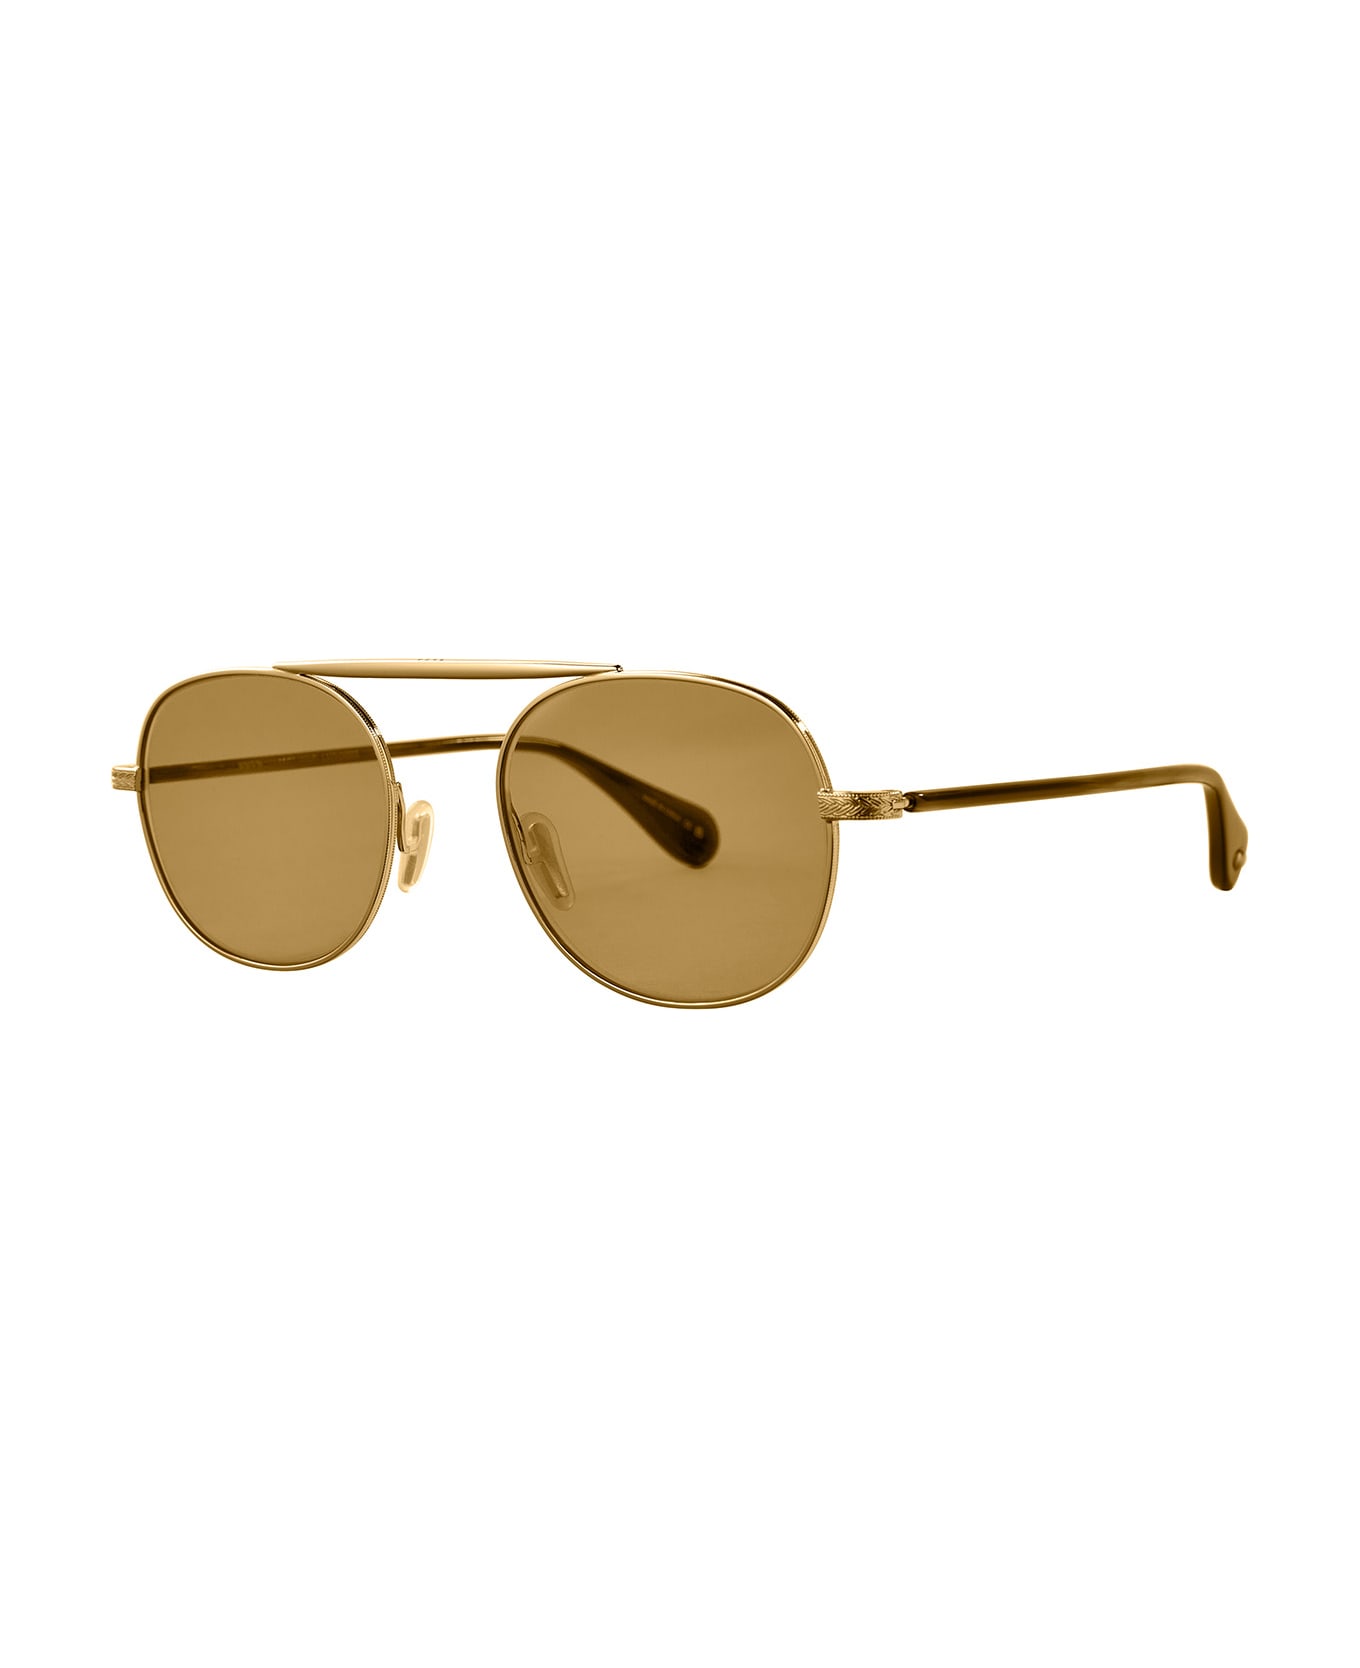 Garrett Leight Van Buren Ii Sun Gold-douglas Fir/flat Pure Maple Sunglasses - Gold-Douglas Fir/Flat Pure Maple サングラス